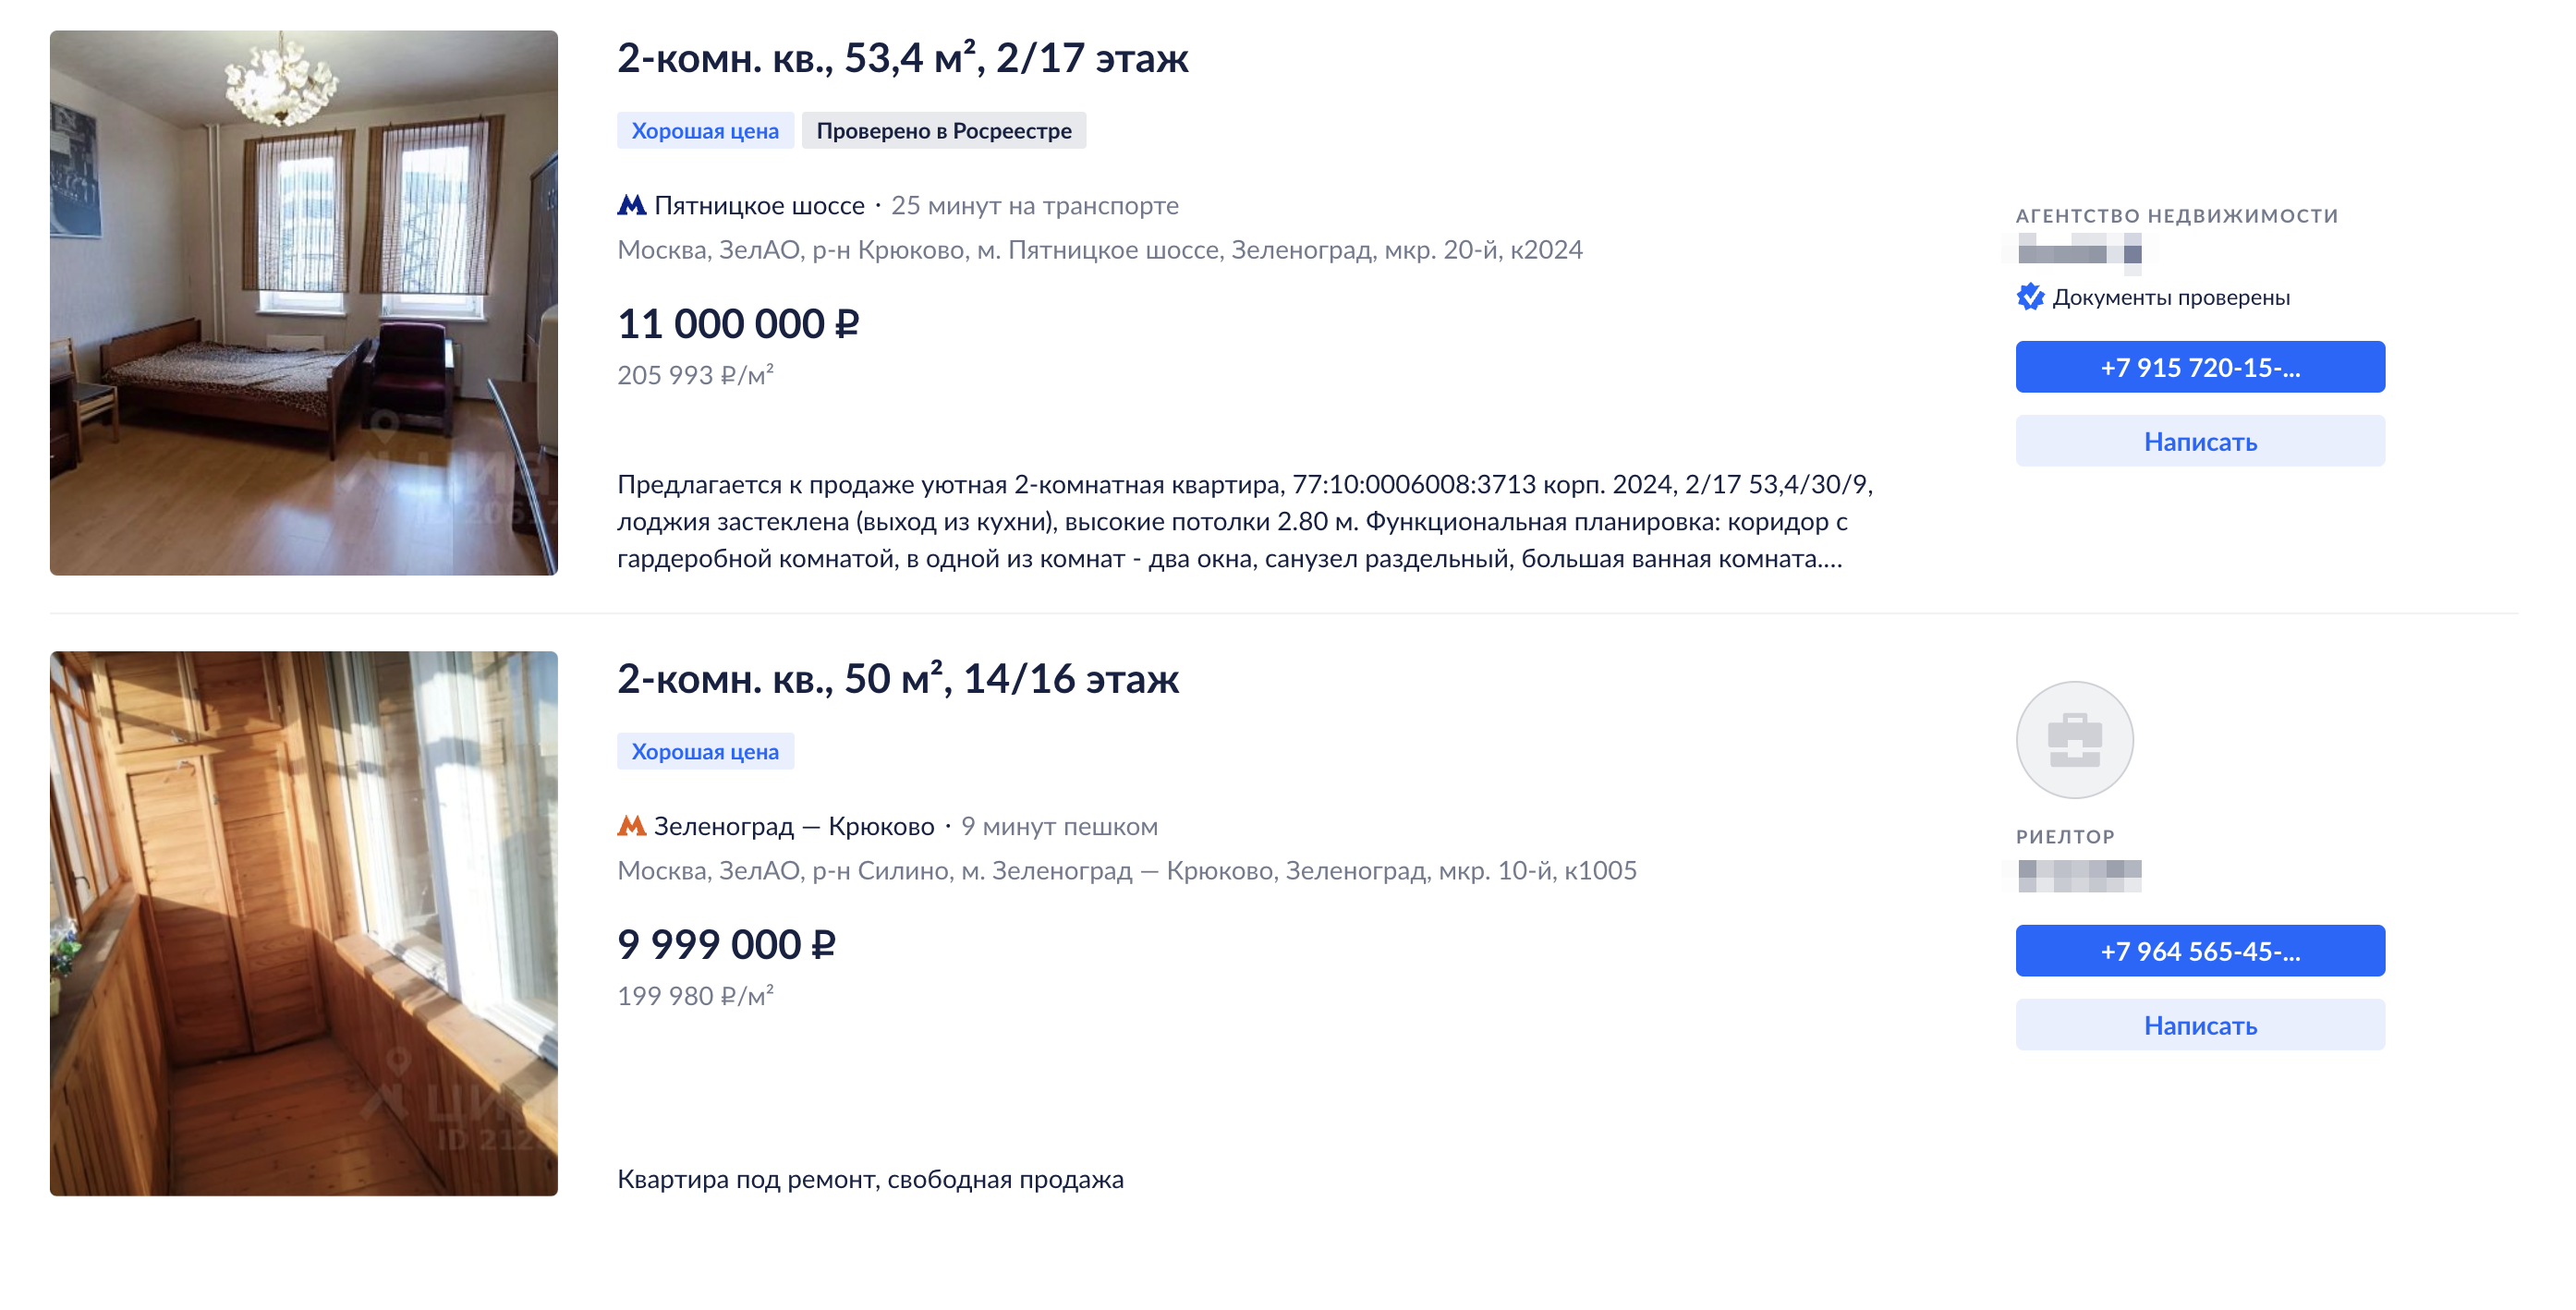 Цены двушек на вторичке в моем районе. Источник: cian.ru